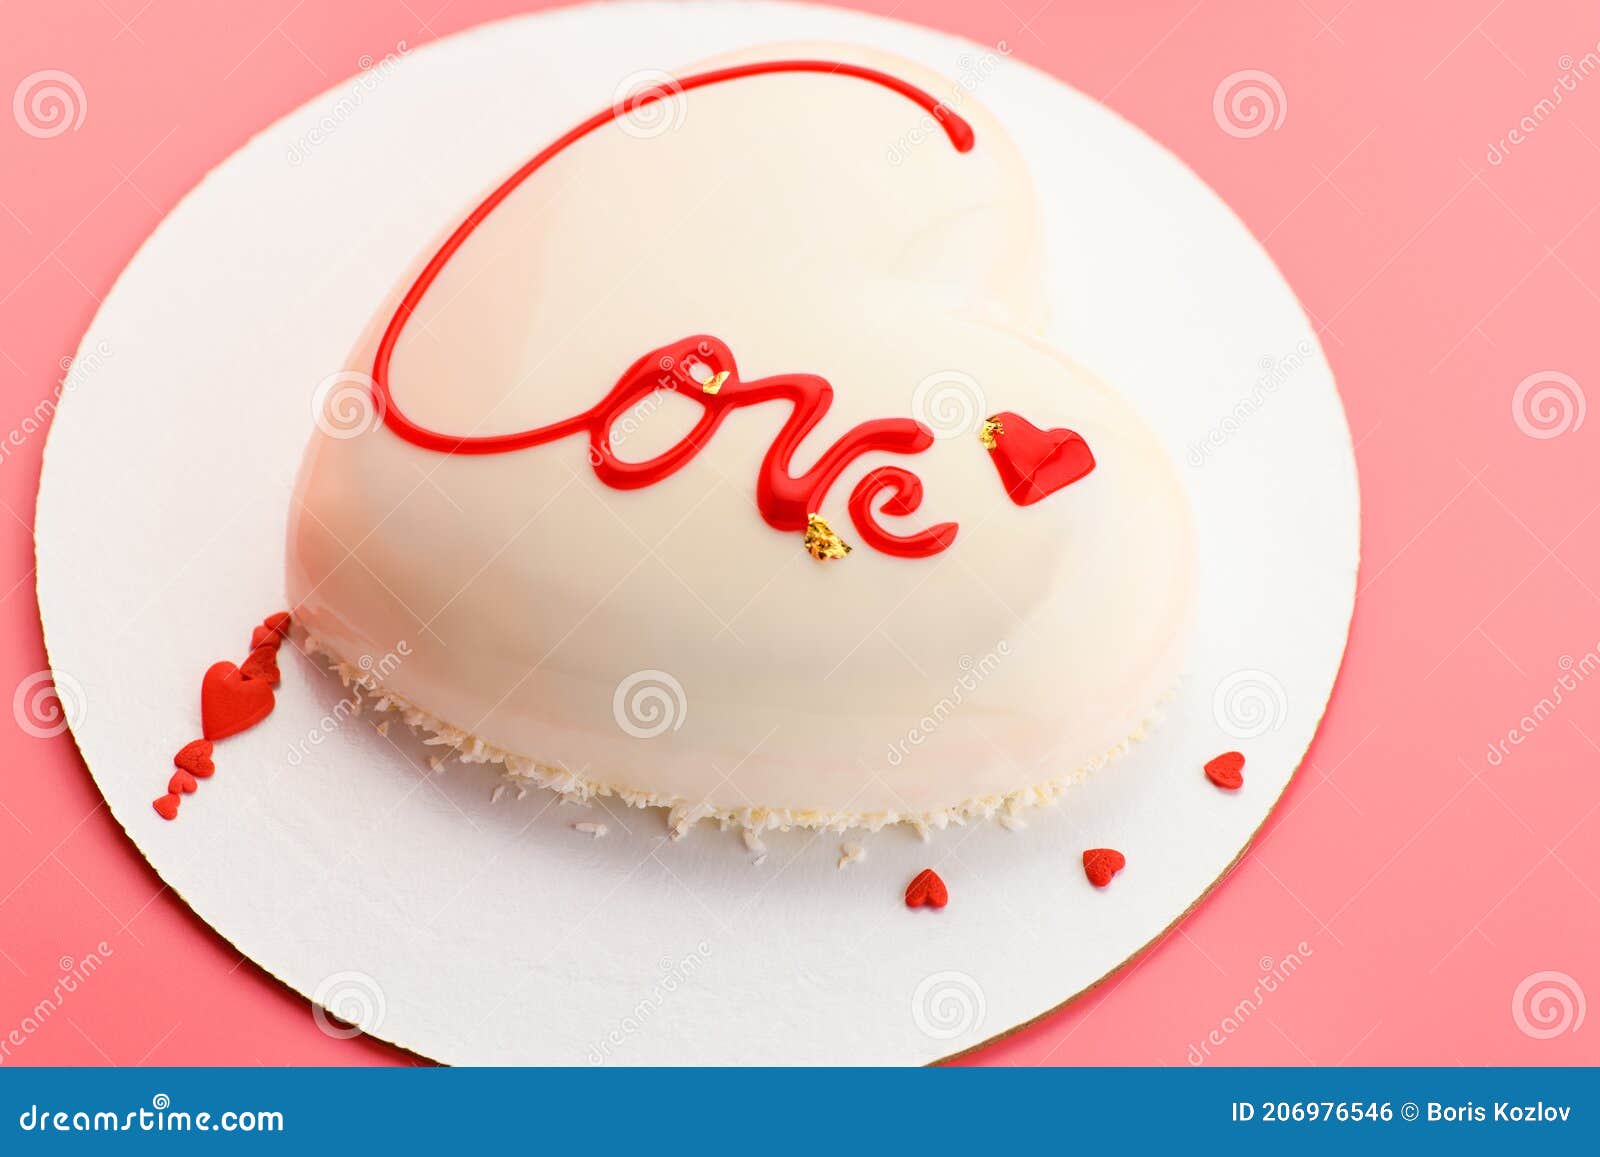 合金蛋糕插双爱心蛋糕插牌生日婚庆装饰配水钻爱心蛋糕插件-阿里巴巴